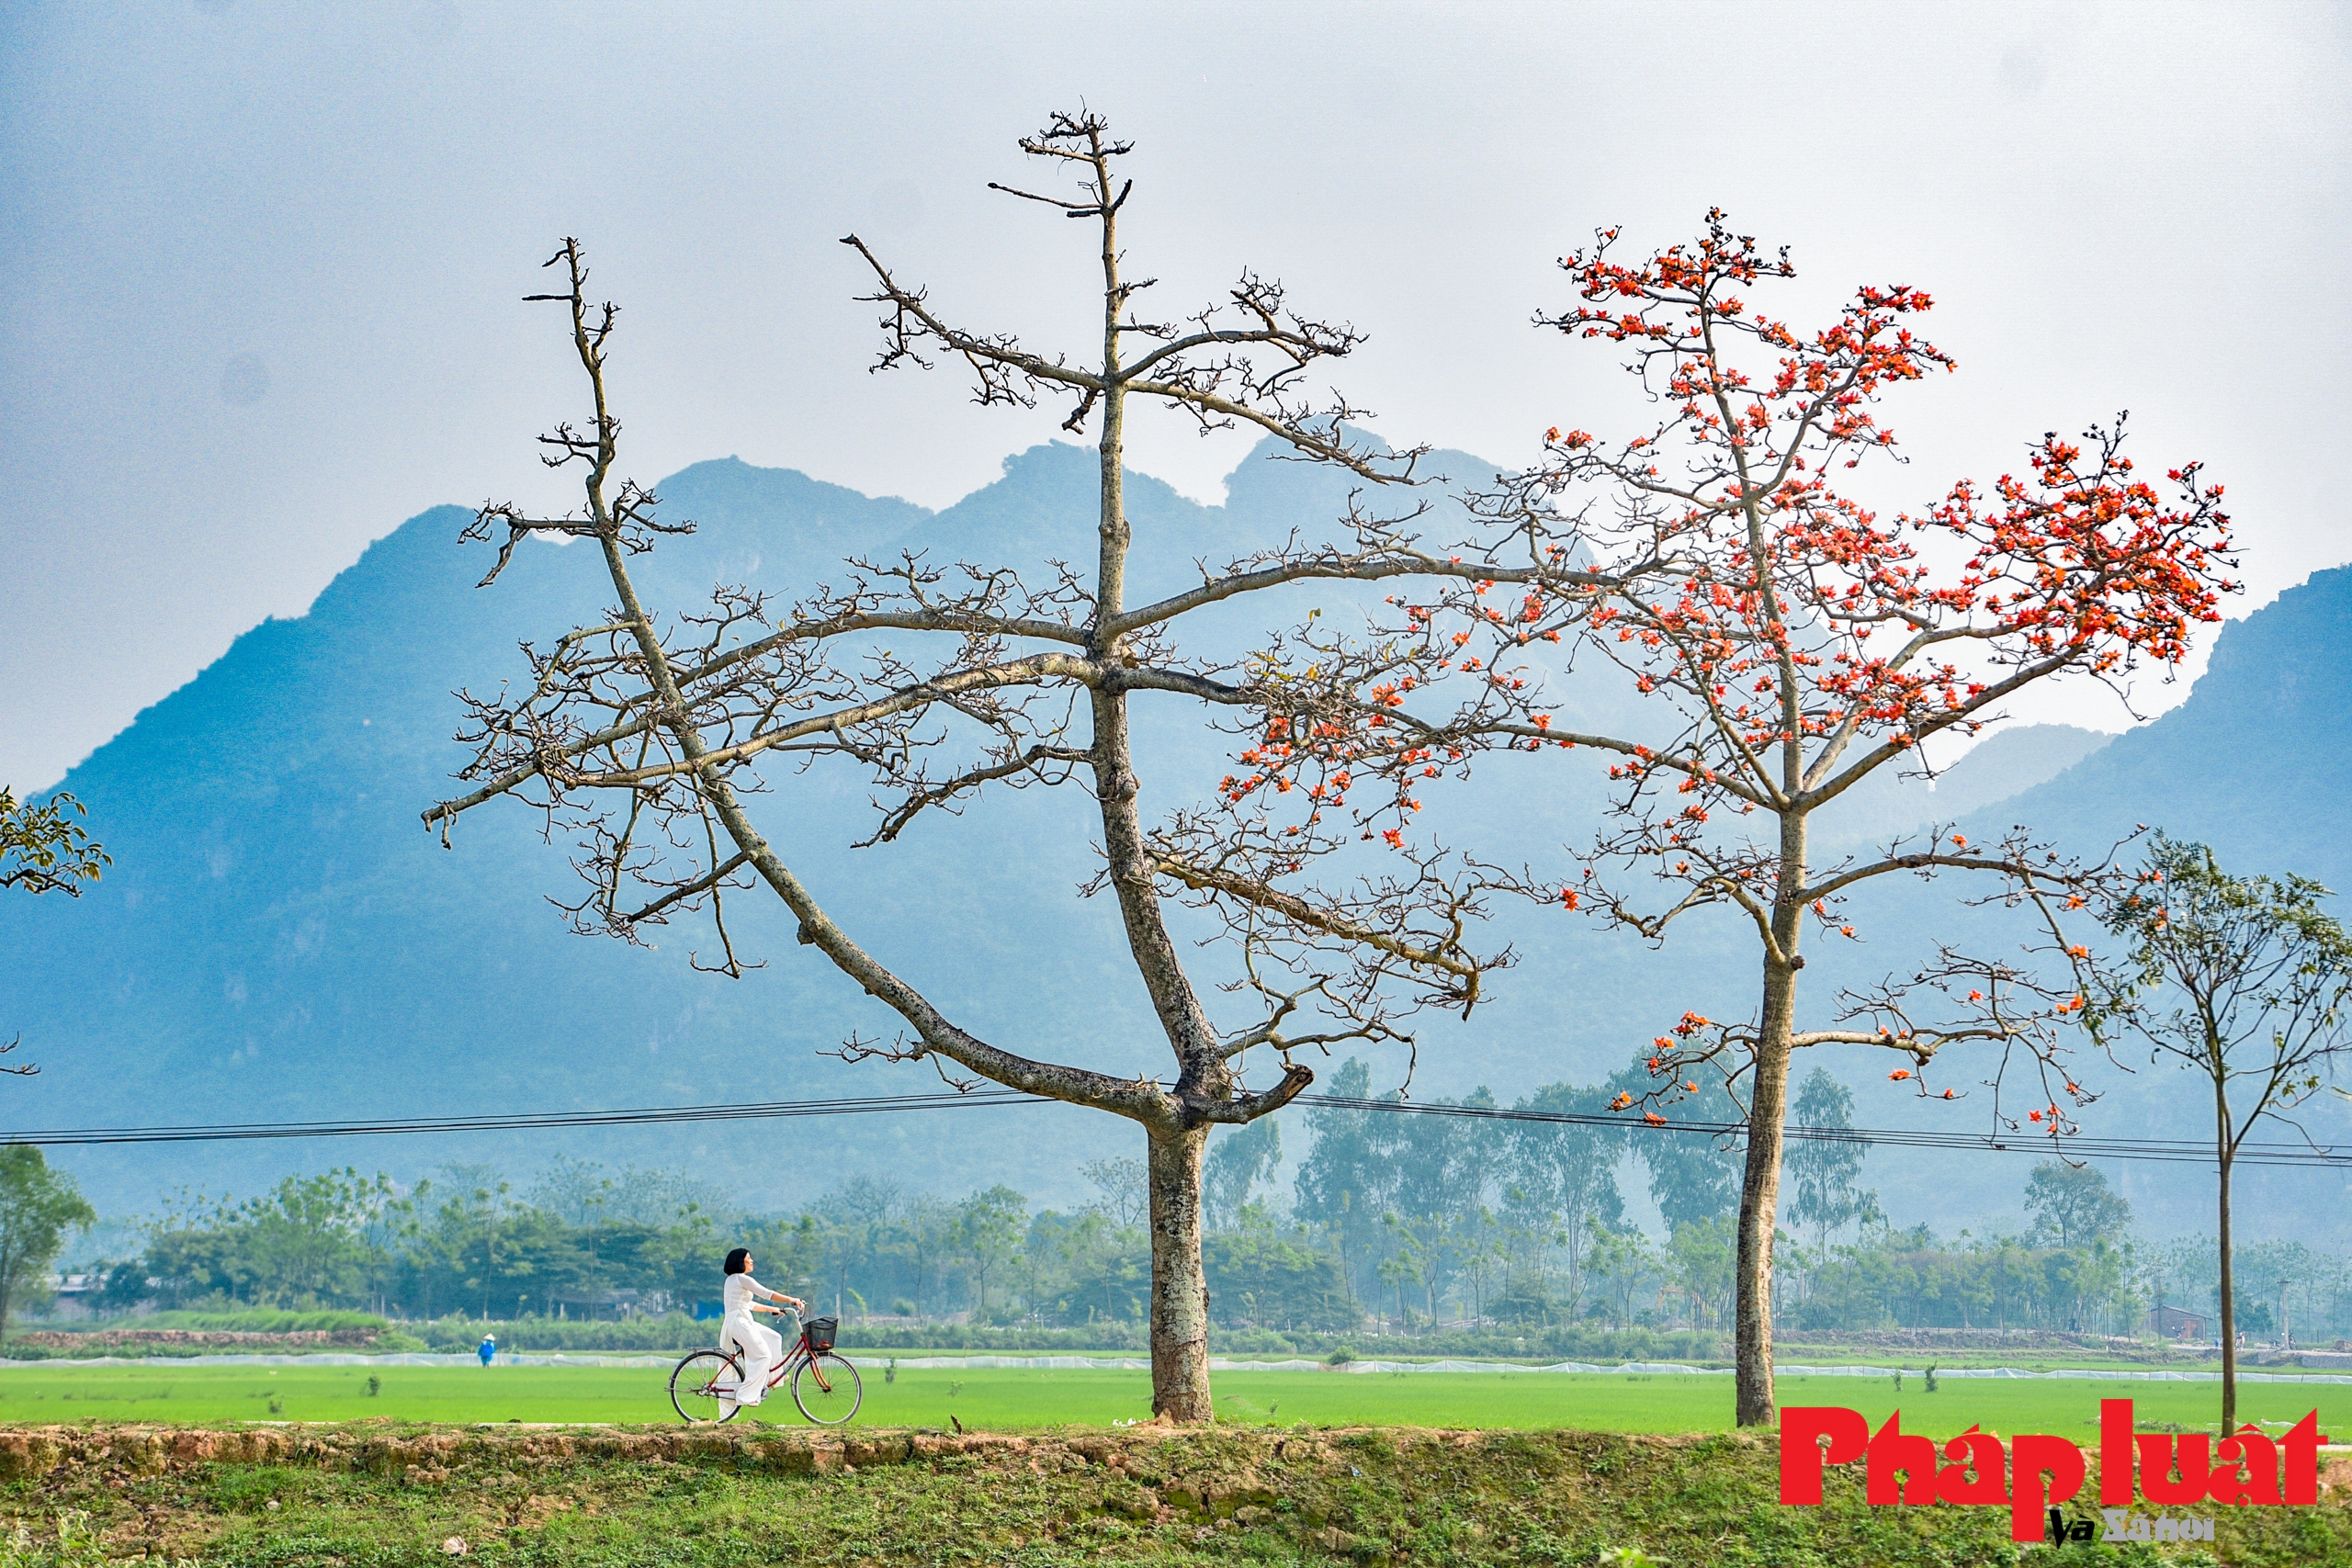 Hàng hoa gạo ngoại thành gìn giữ hồn quê đất Việt